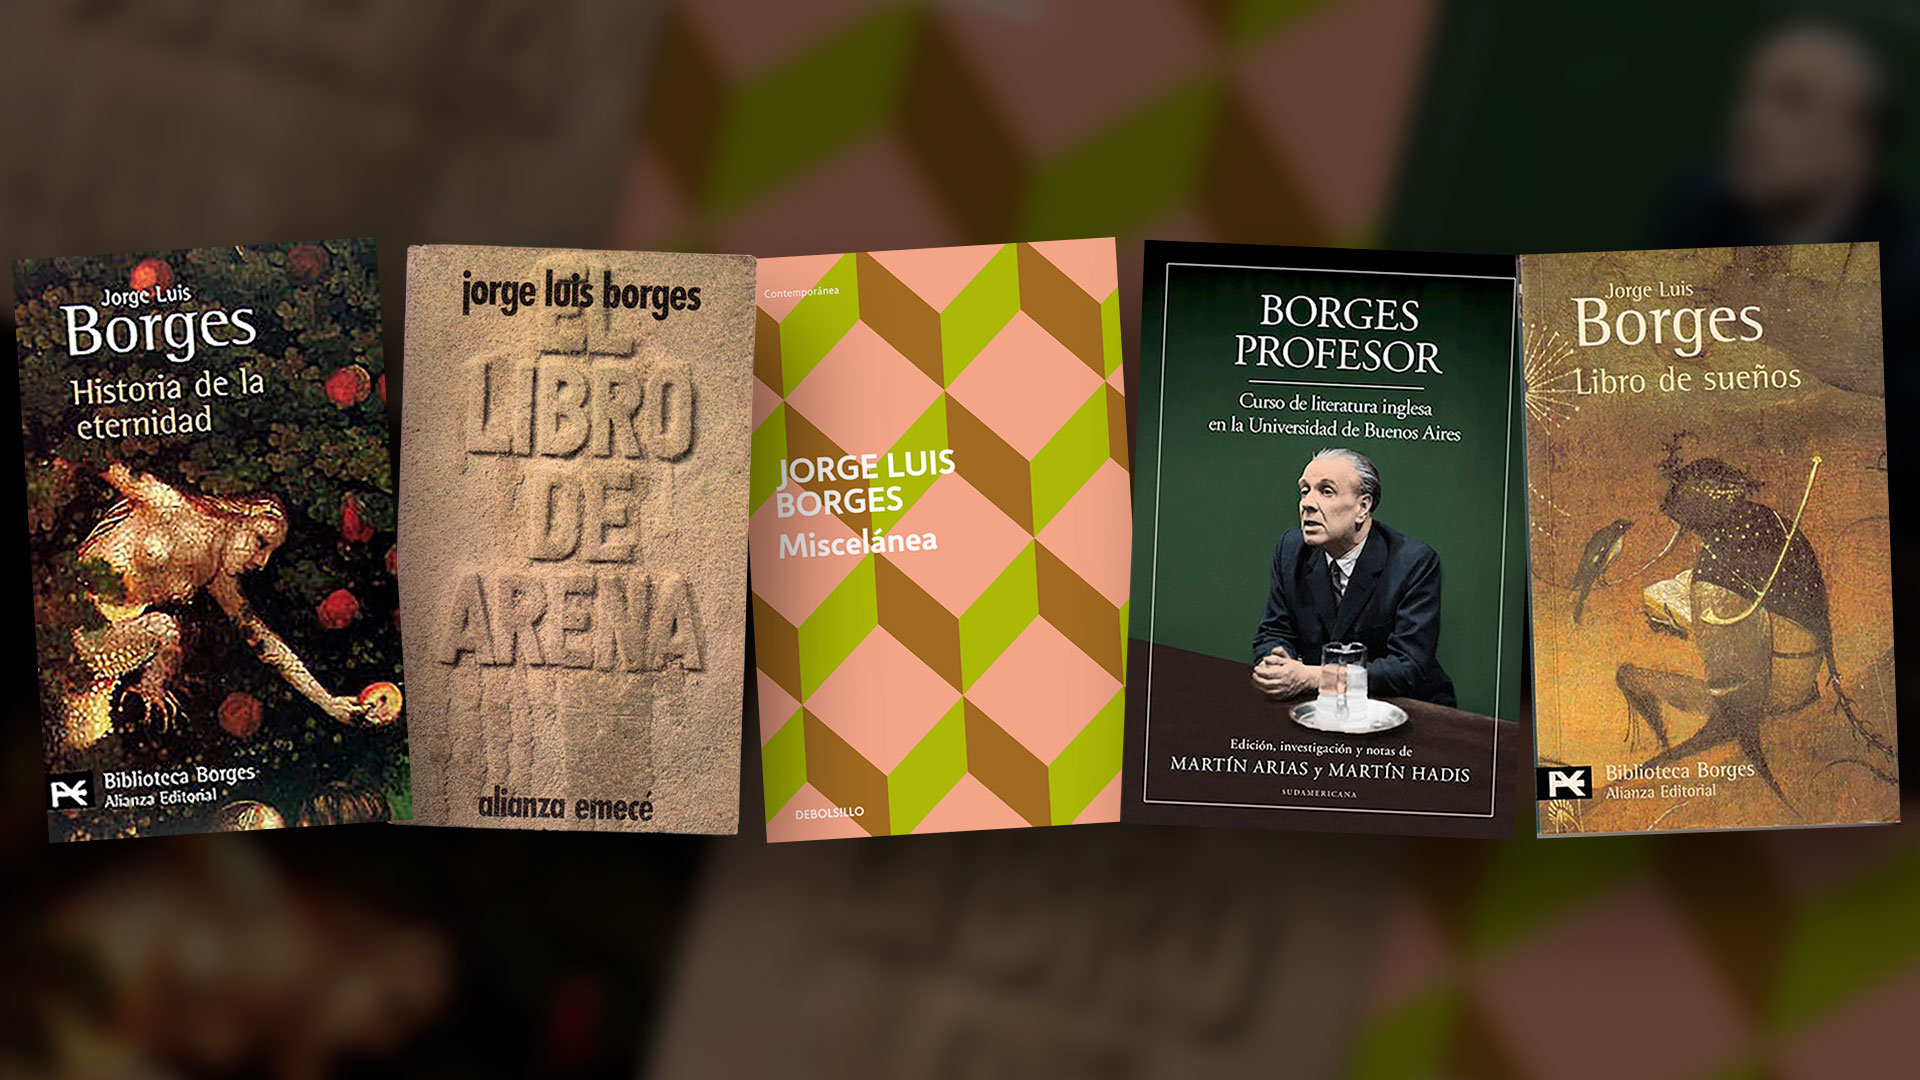 Festival Borges: 50% de descuento en cinco libros que permiten meterse en su mundo